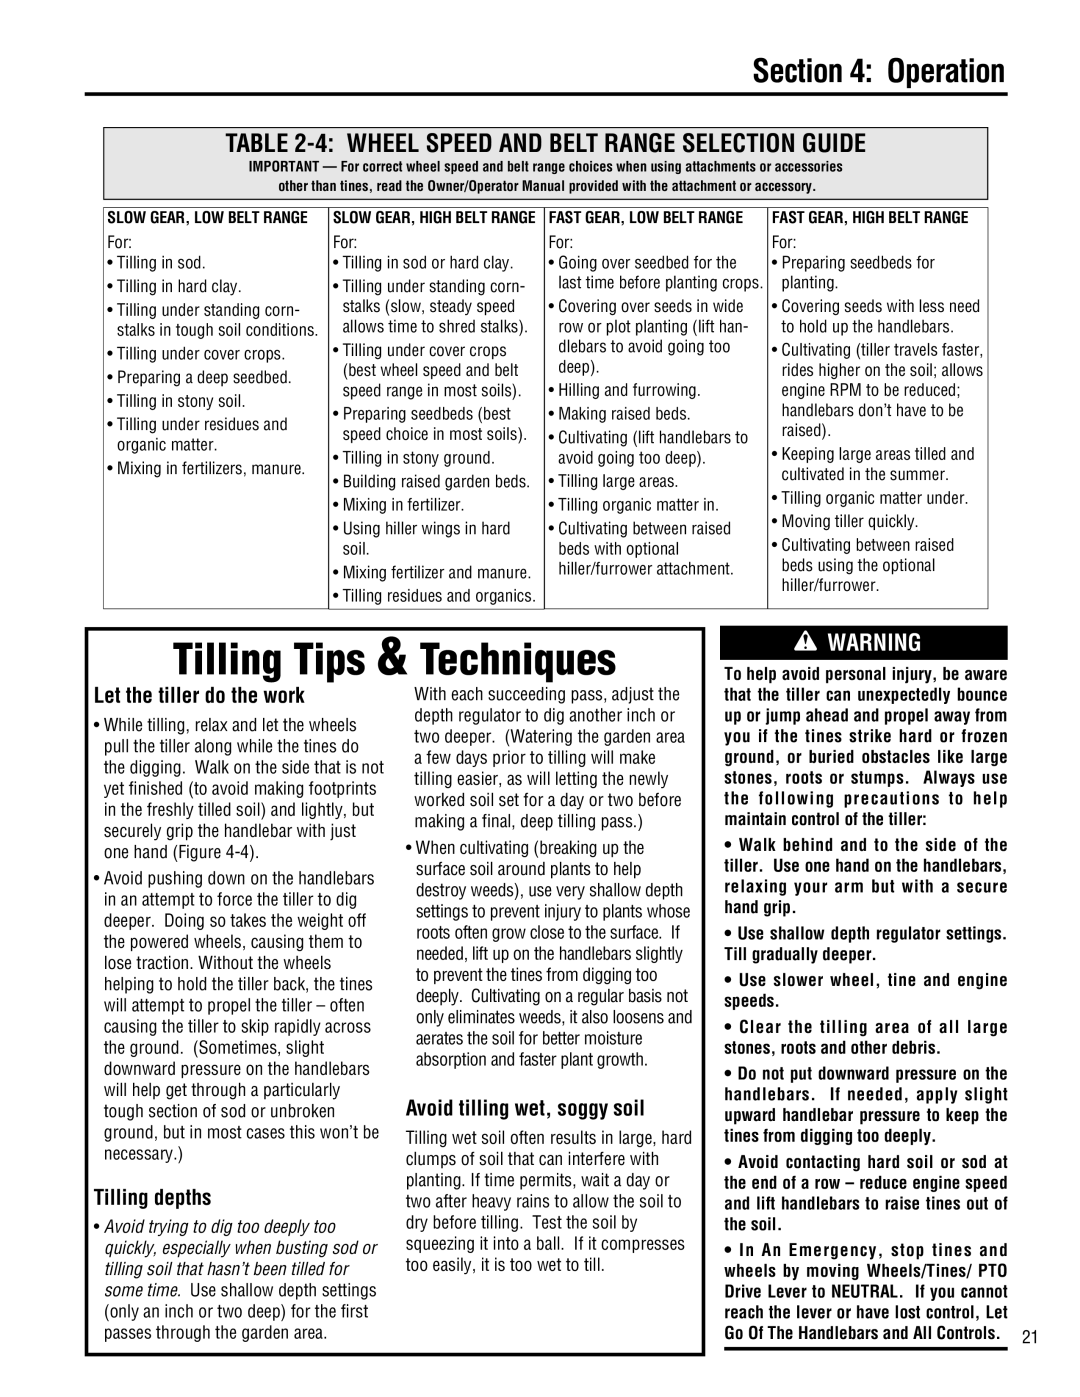 Troy-Bilt E682J-Horse Tilling Tips & Techniques, 4 WHEEL SPEED AND BELT RANGE SELECTION GUIDE, Let the tiller do the work 